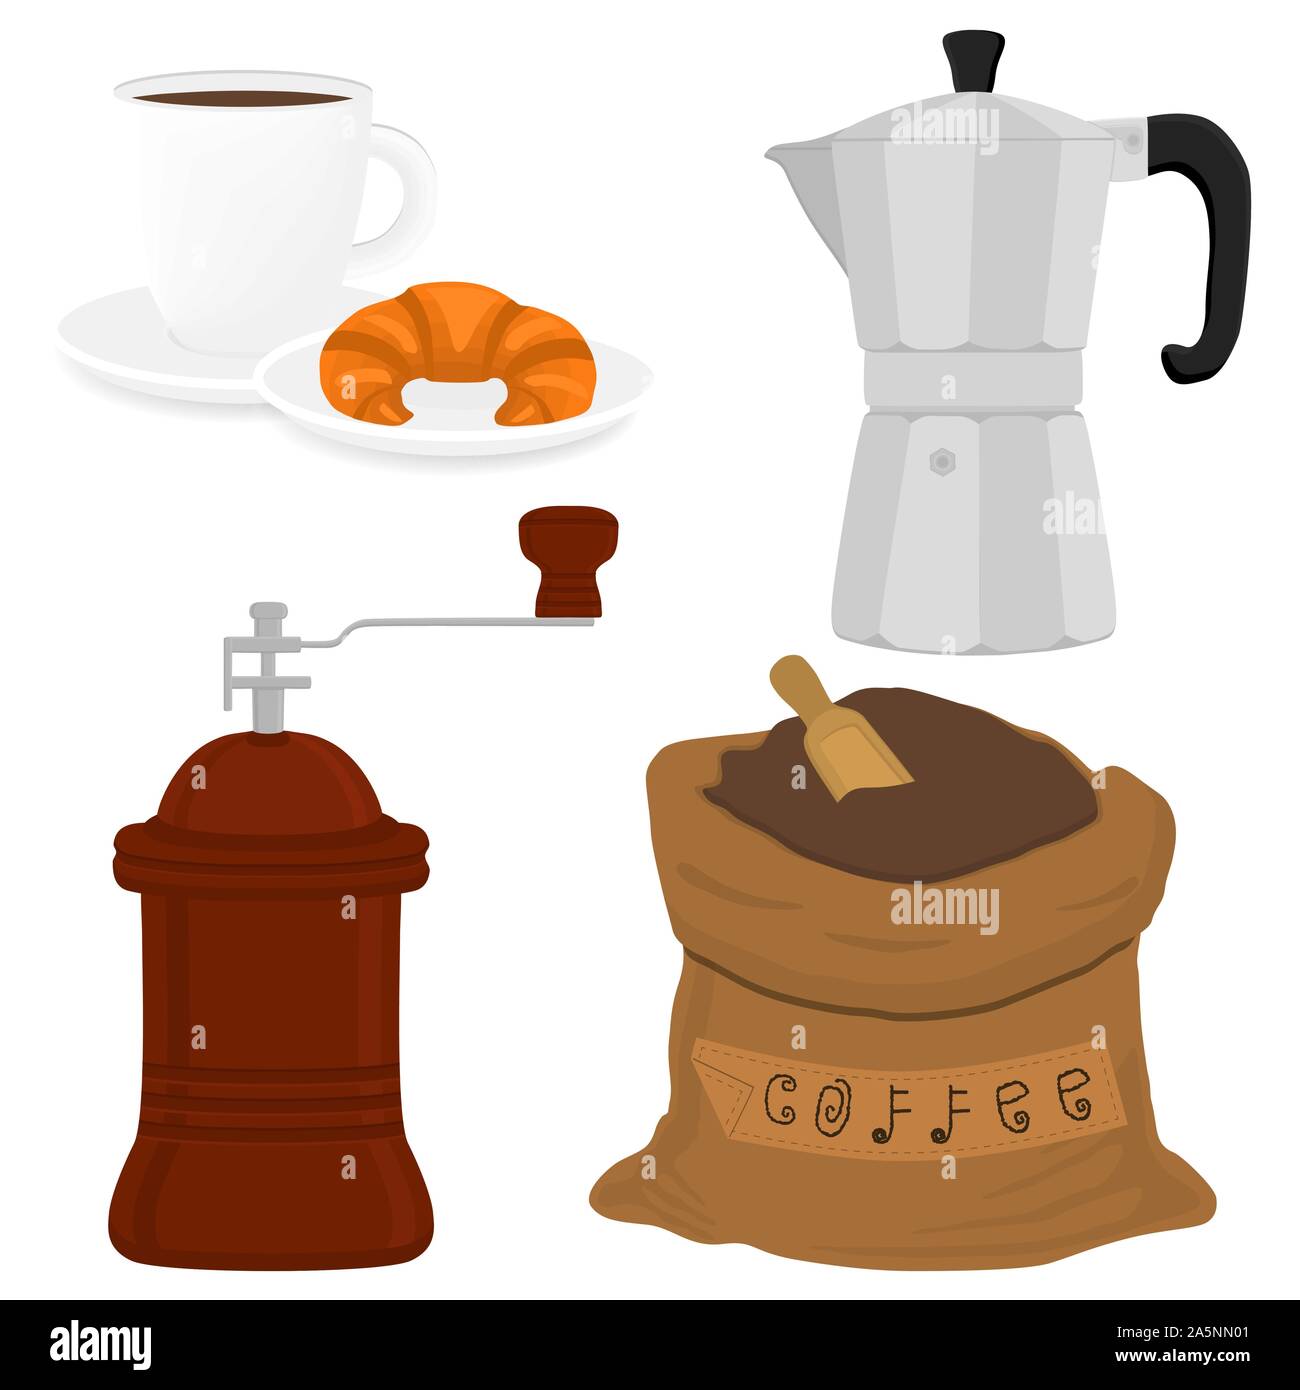 Abbildung: Symbol auf Thema große farbige verschiedene Arten Teekocher Wasserkocher, neue Größe logo Mühlen eingestellt. Mühle Muster bestehend aus Sammlung Zubehör zu Teekocher Stock Vektor